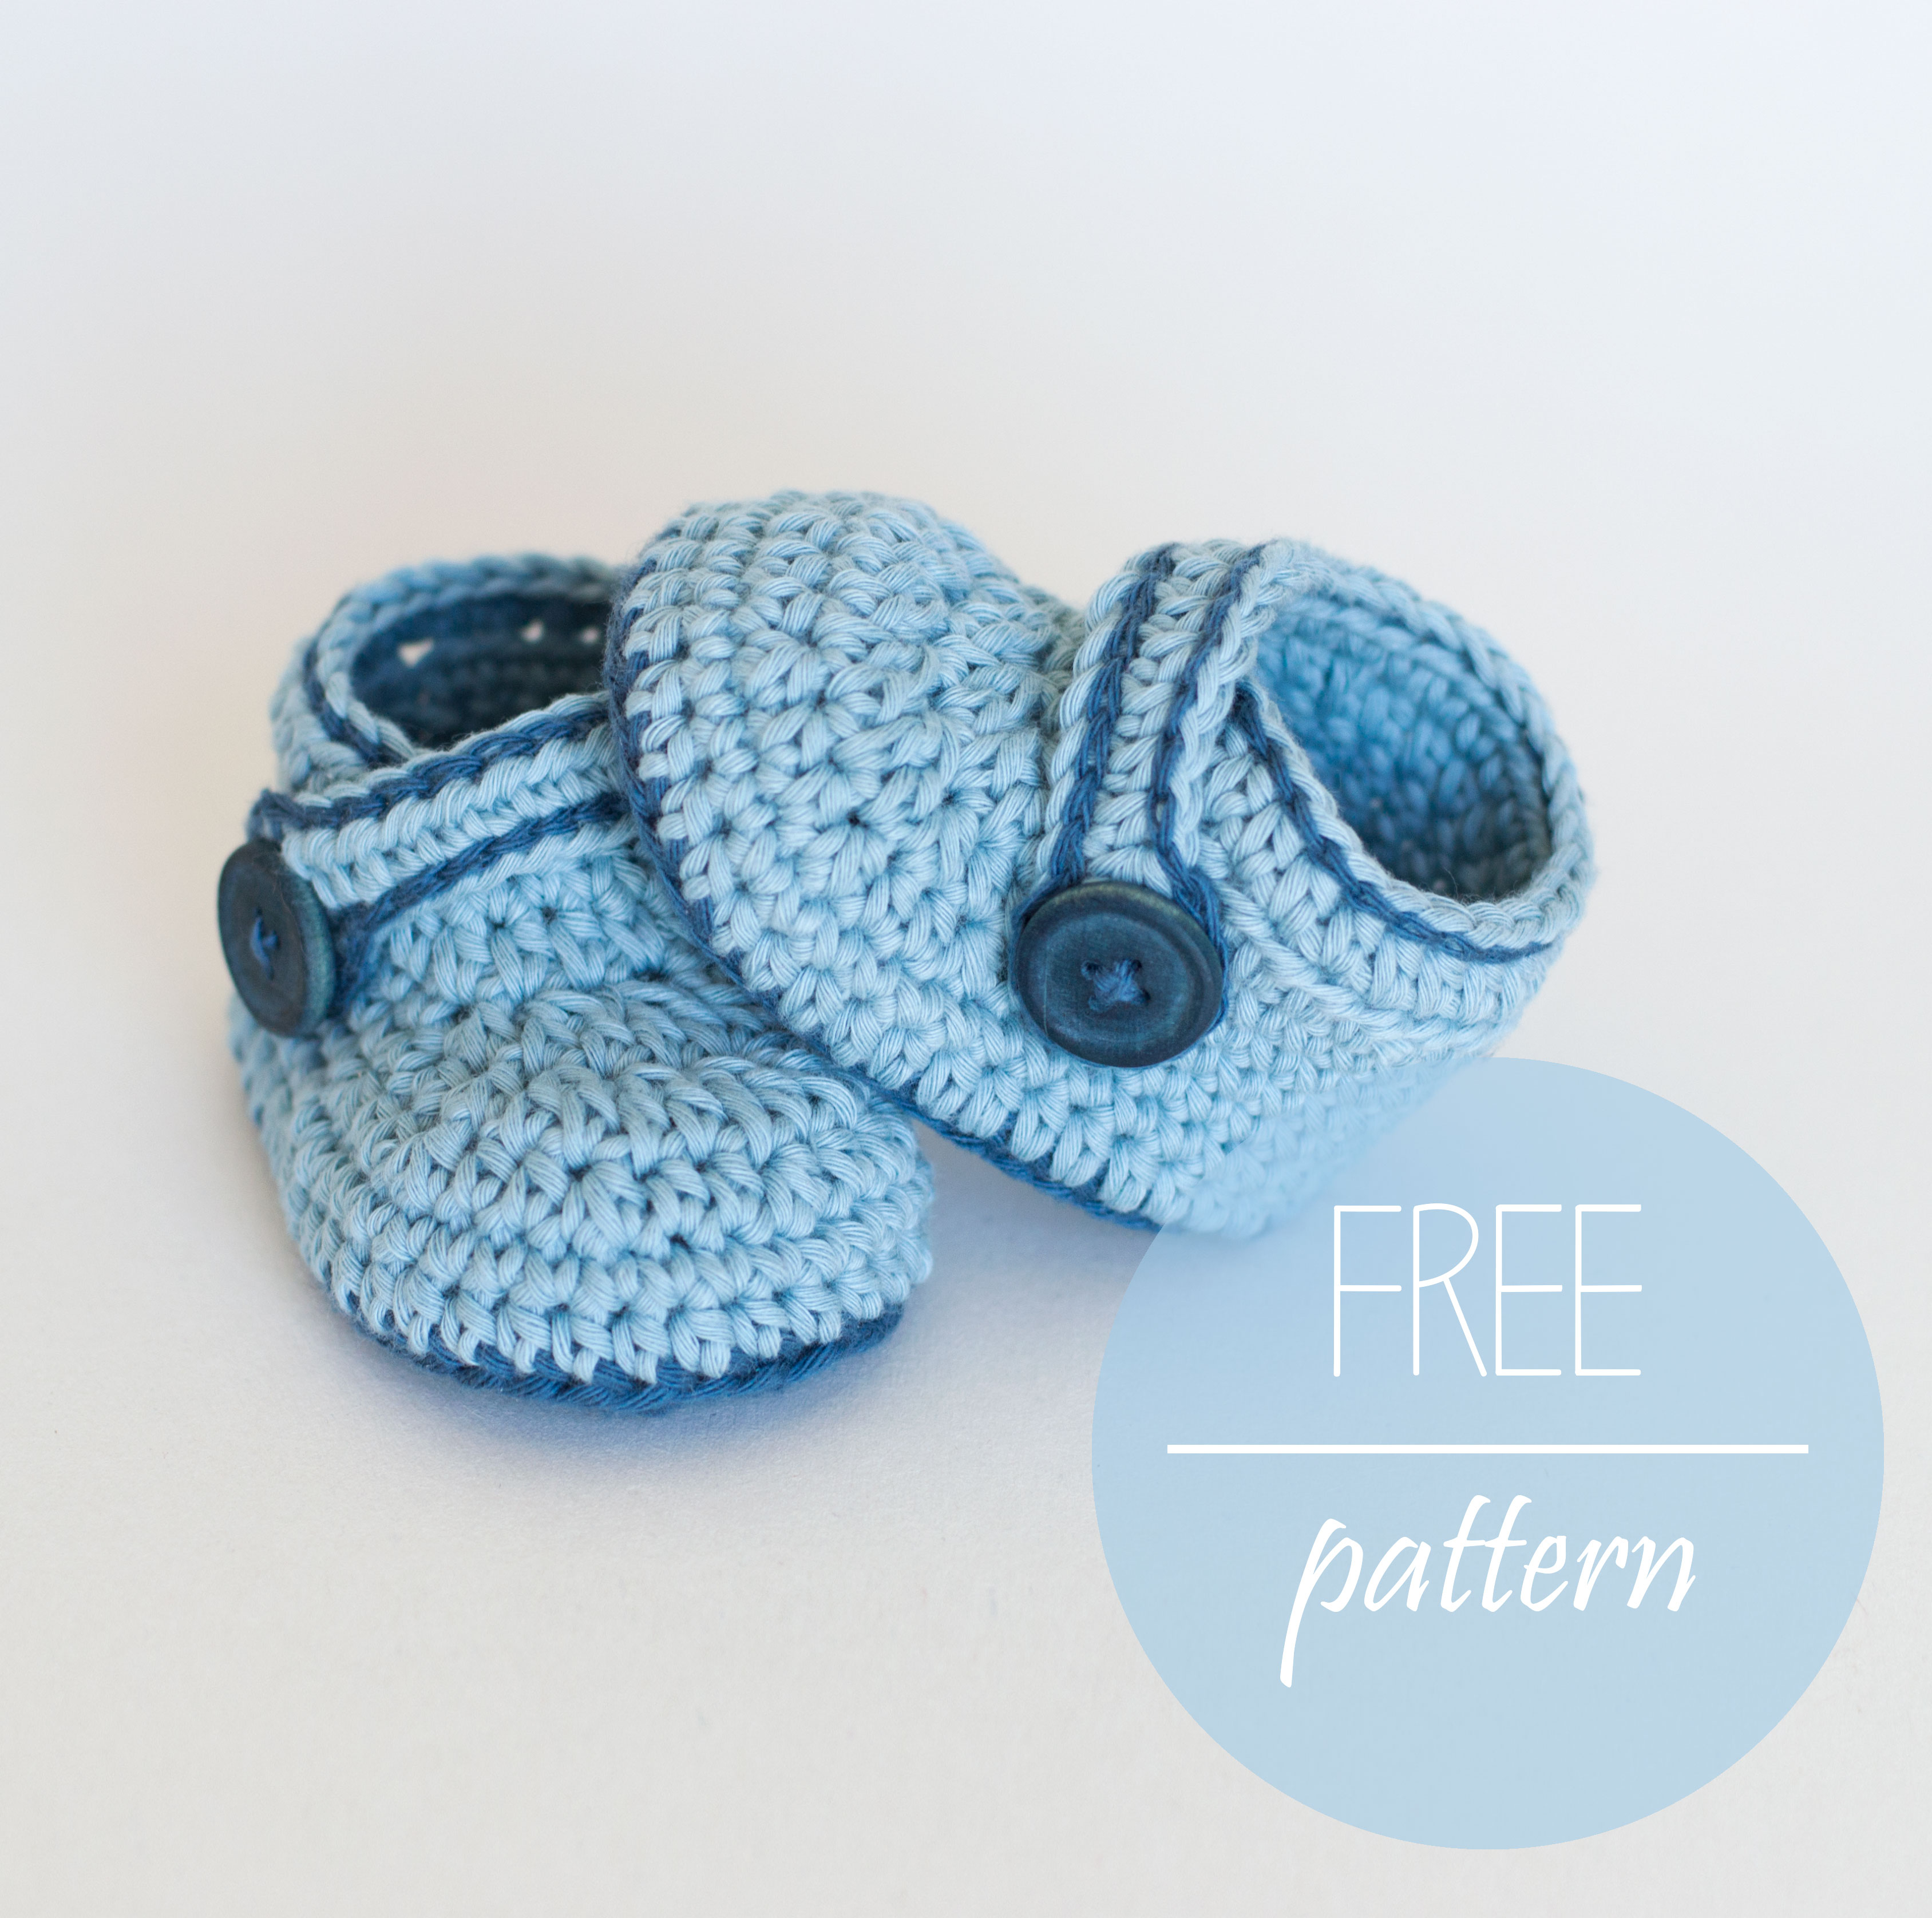 Crochet Baby Boy Sweater Pattern Free Free Crochet Pattern Blue Whale Cro Patterns